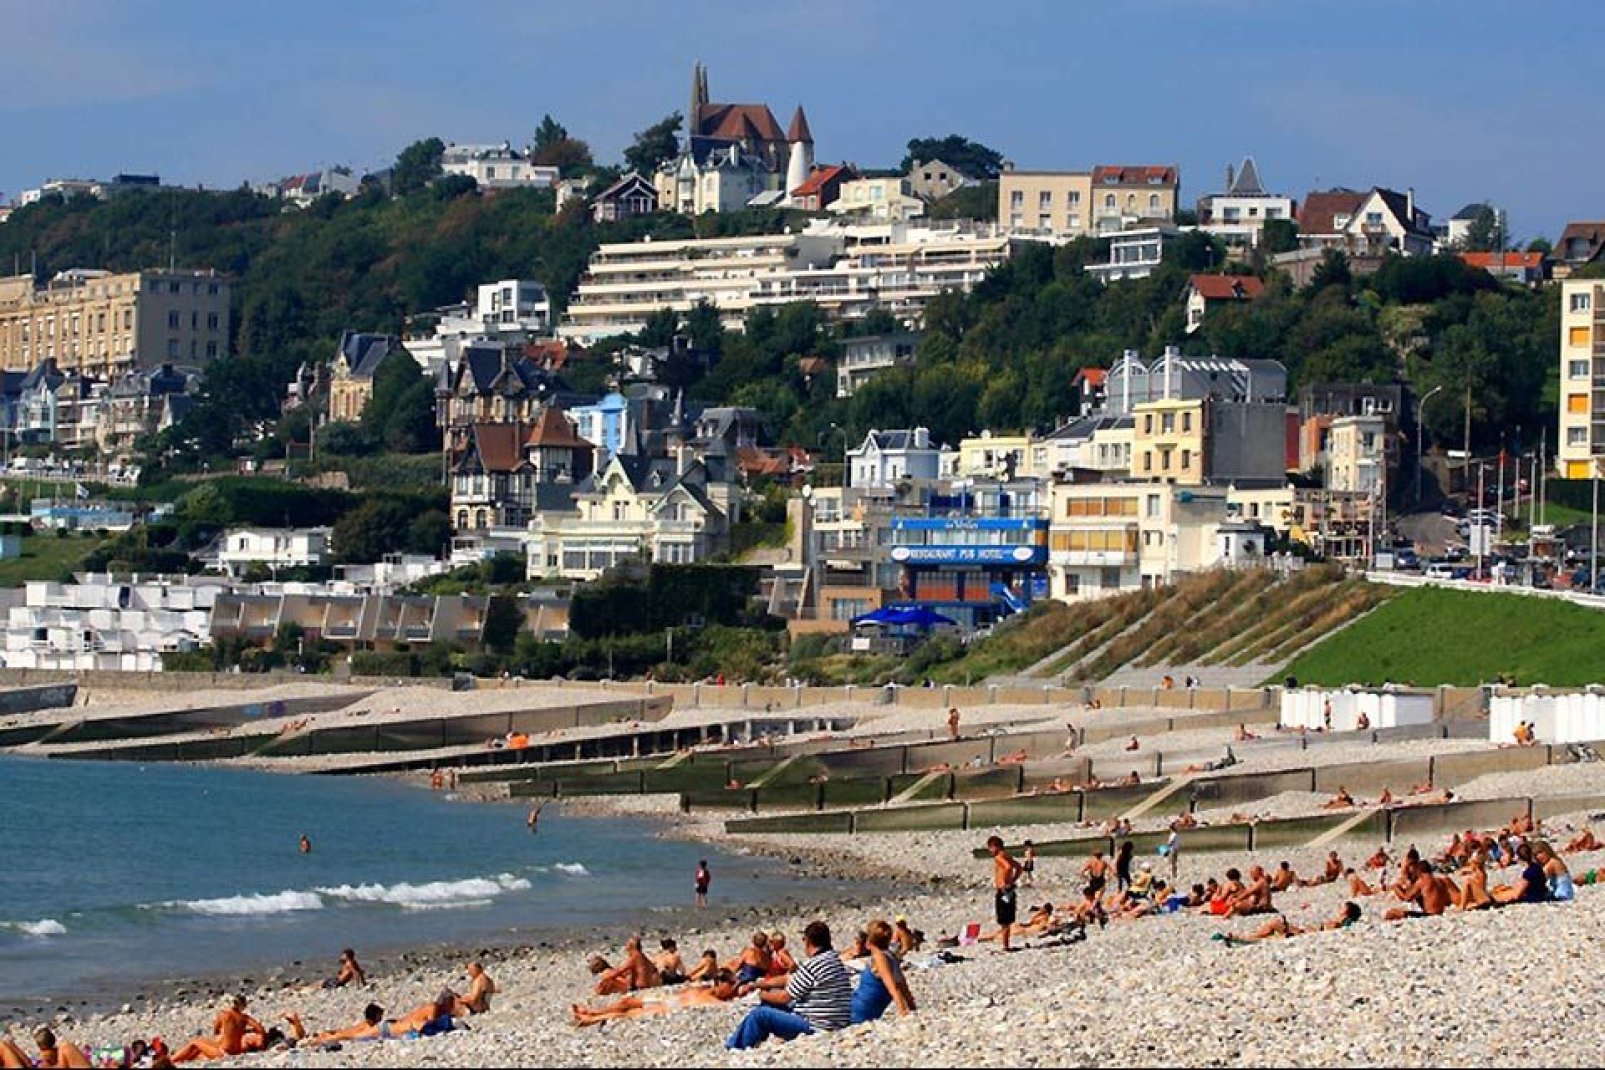 La città di Le Havre è stata dichiarata località balneare nel 1999. La spiaggia propone in particolare il più grande skatepark a cielo aperto della Francia.